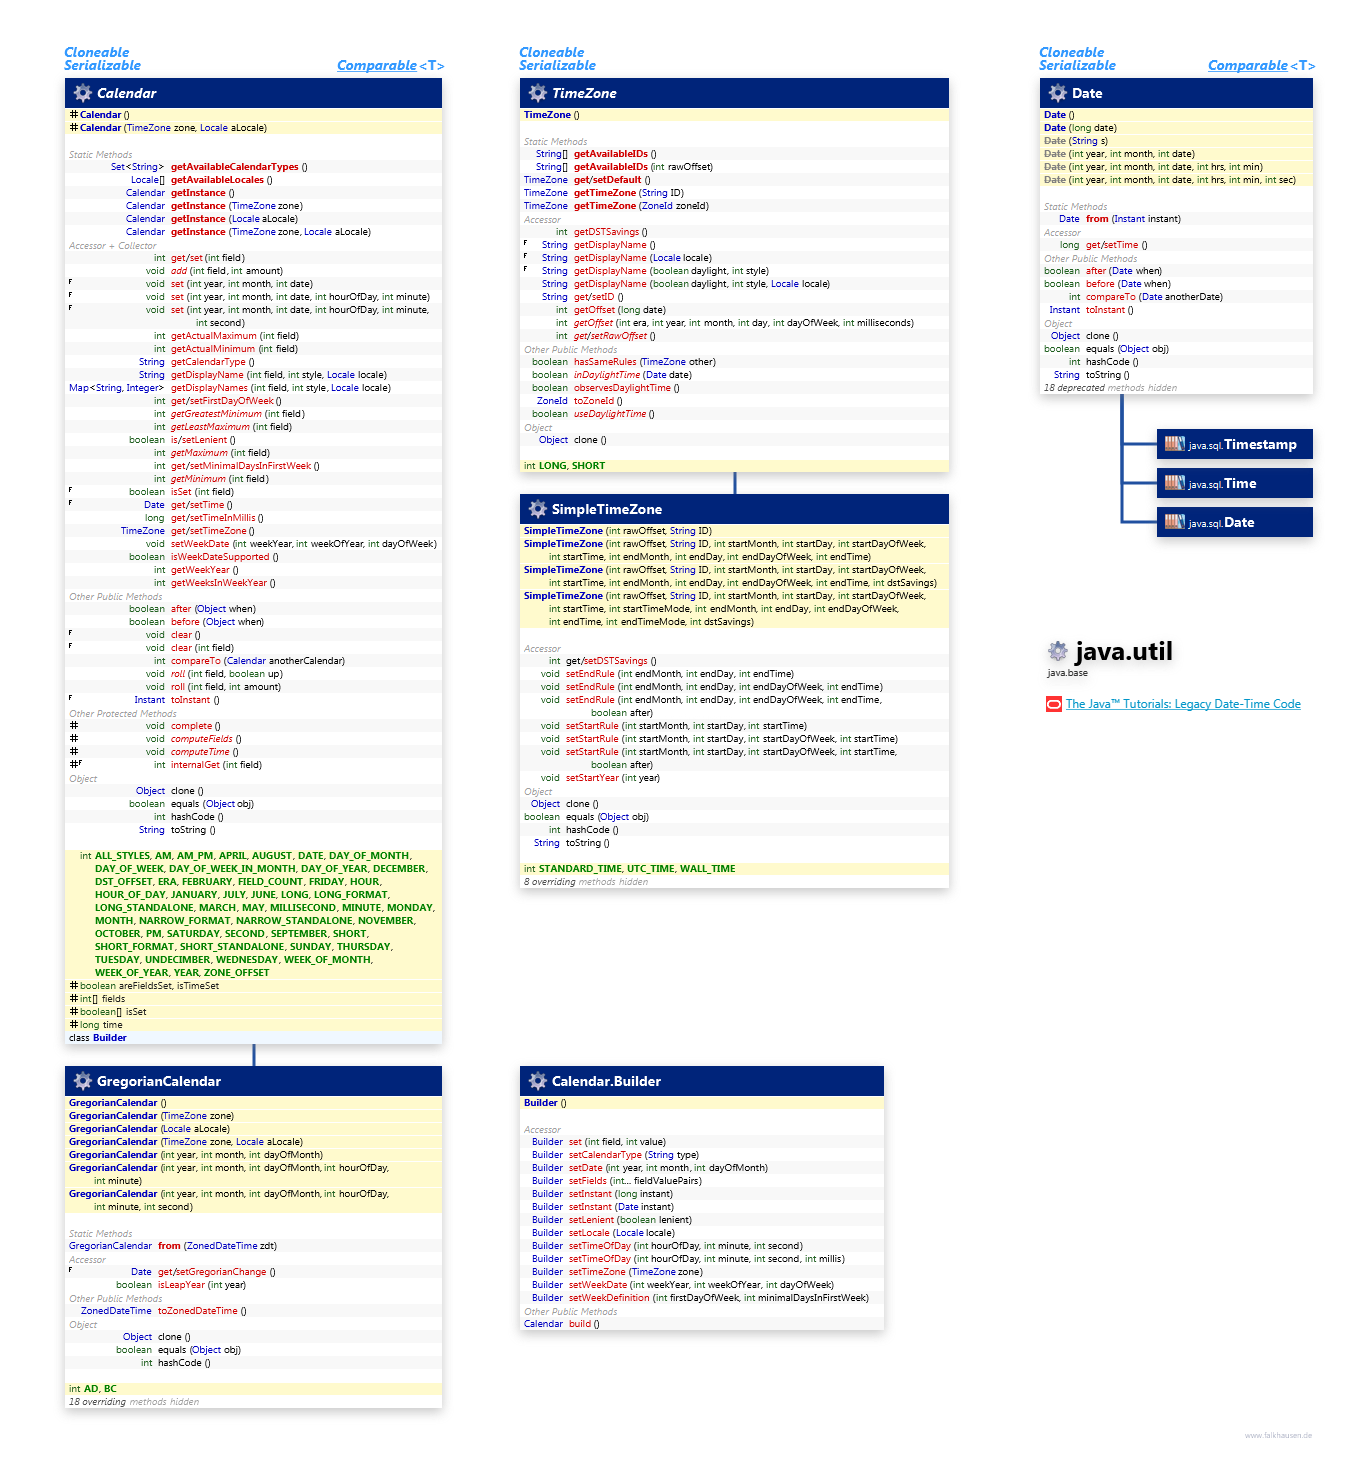 java.util Calendar class diagram and api documentation for Java 10